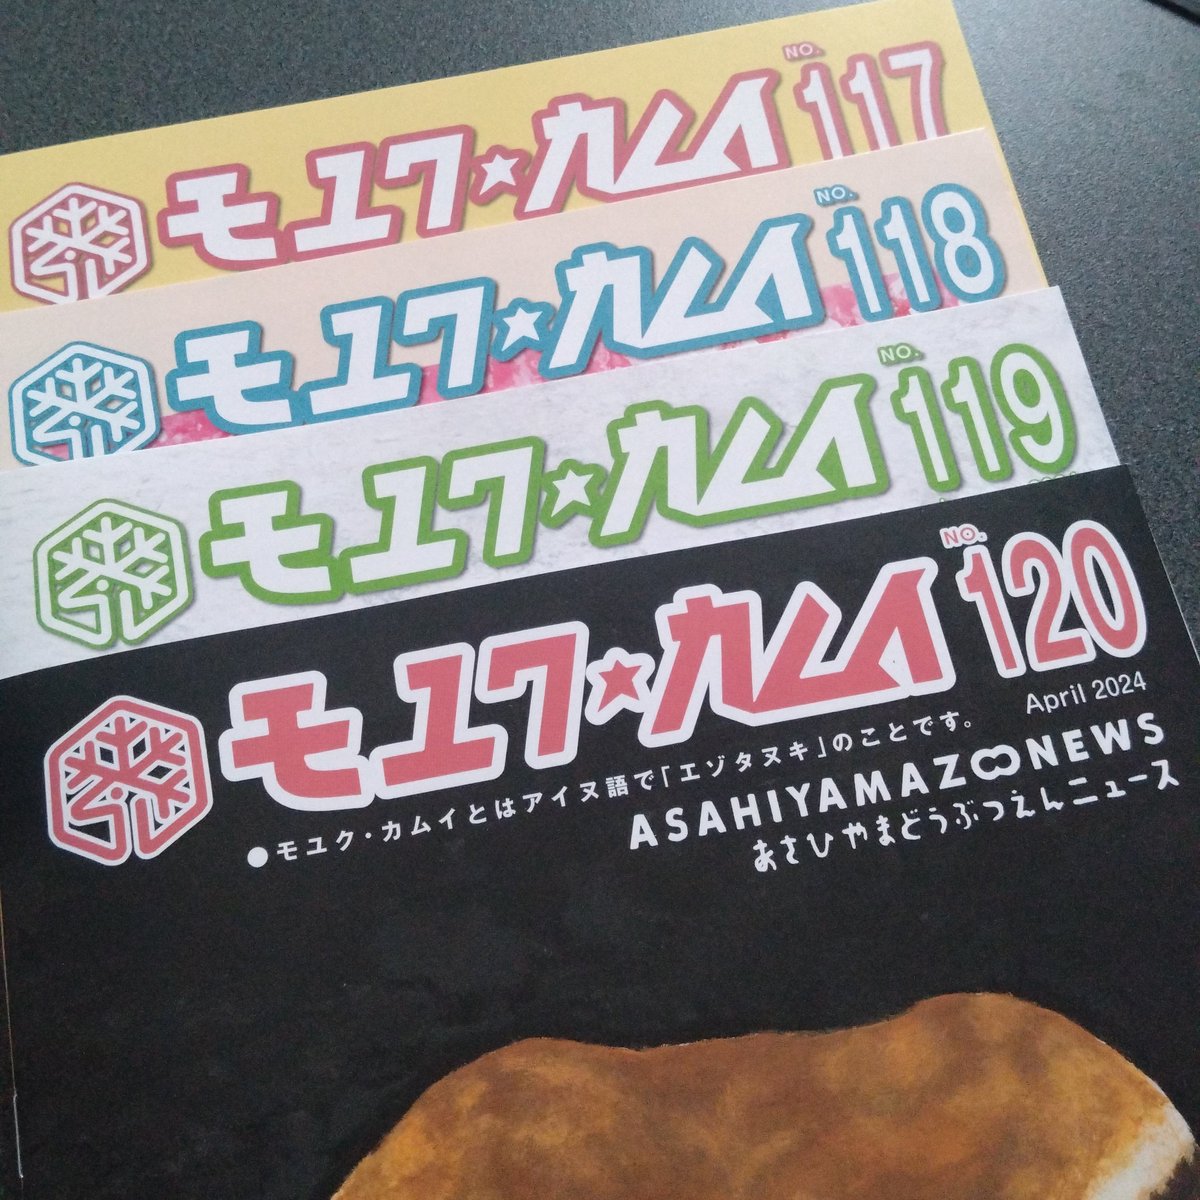 道外のファンも多い旭山動物園。
意外と知られていないのですが、『モユクカムイ』という季刊誌が発行されていて、無料でもらえます。
最新号No.120では3月末まで園長をなさっていた坂東前園長のメッセージが掲載されています。
これから訪問予定の方、是非！！

⬇もらいかた
city.asahikawa.hokkaido.jp/asahiyamazoo/2…